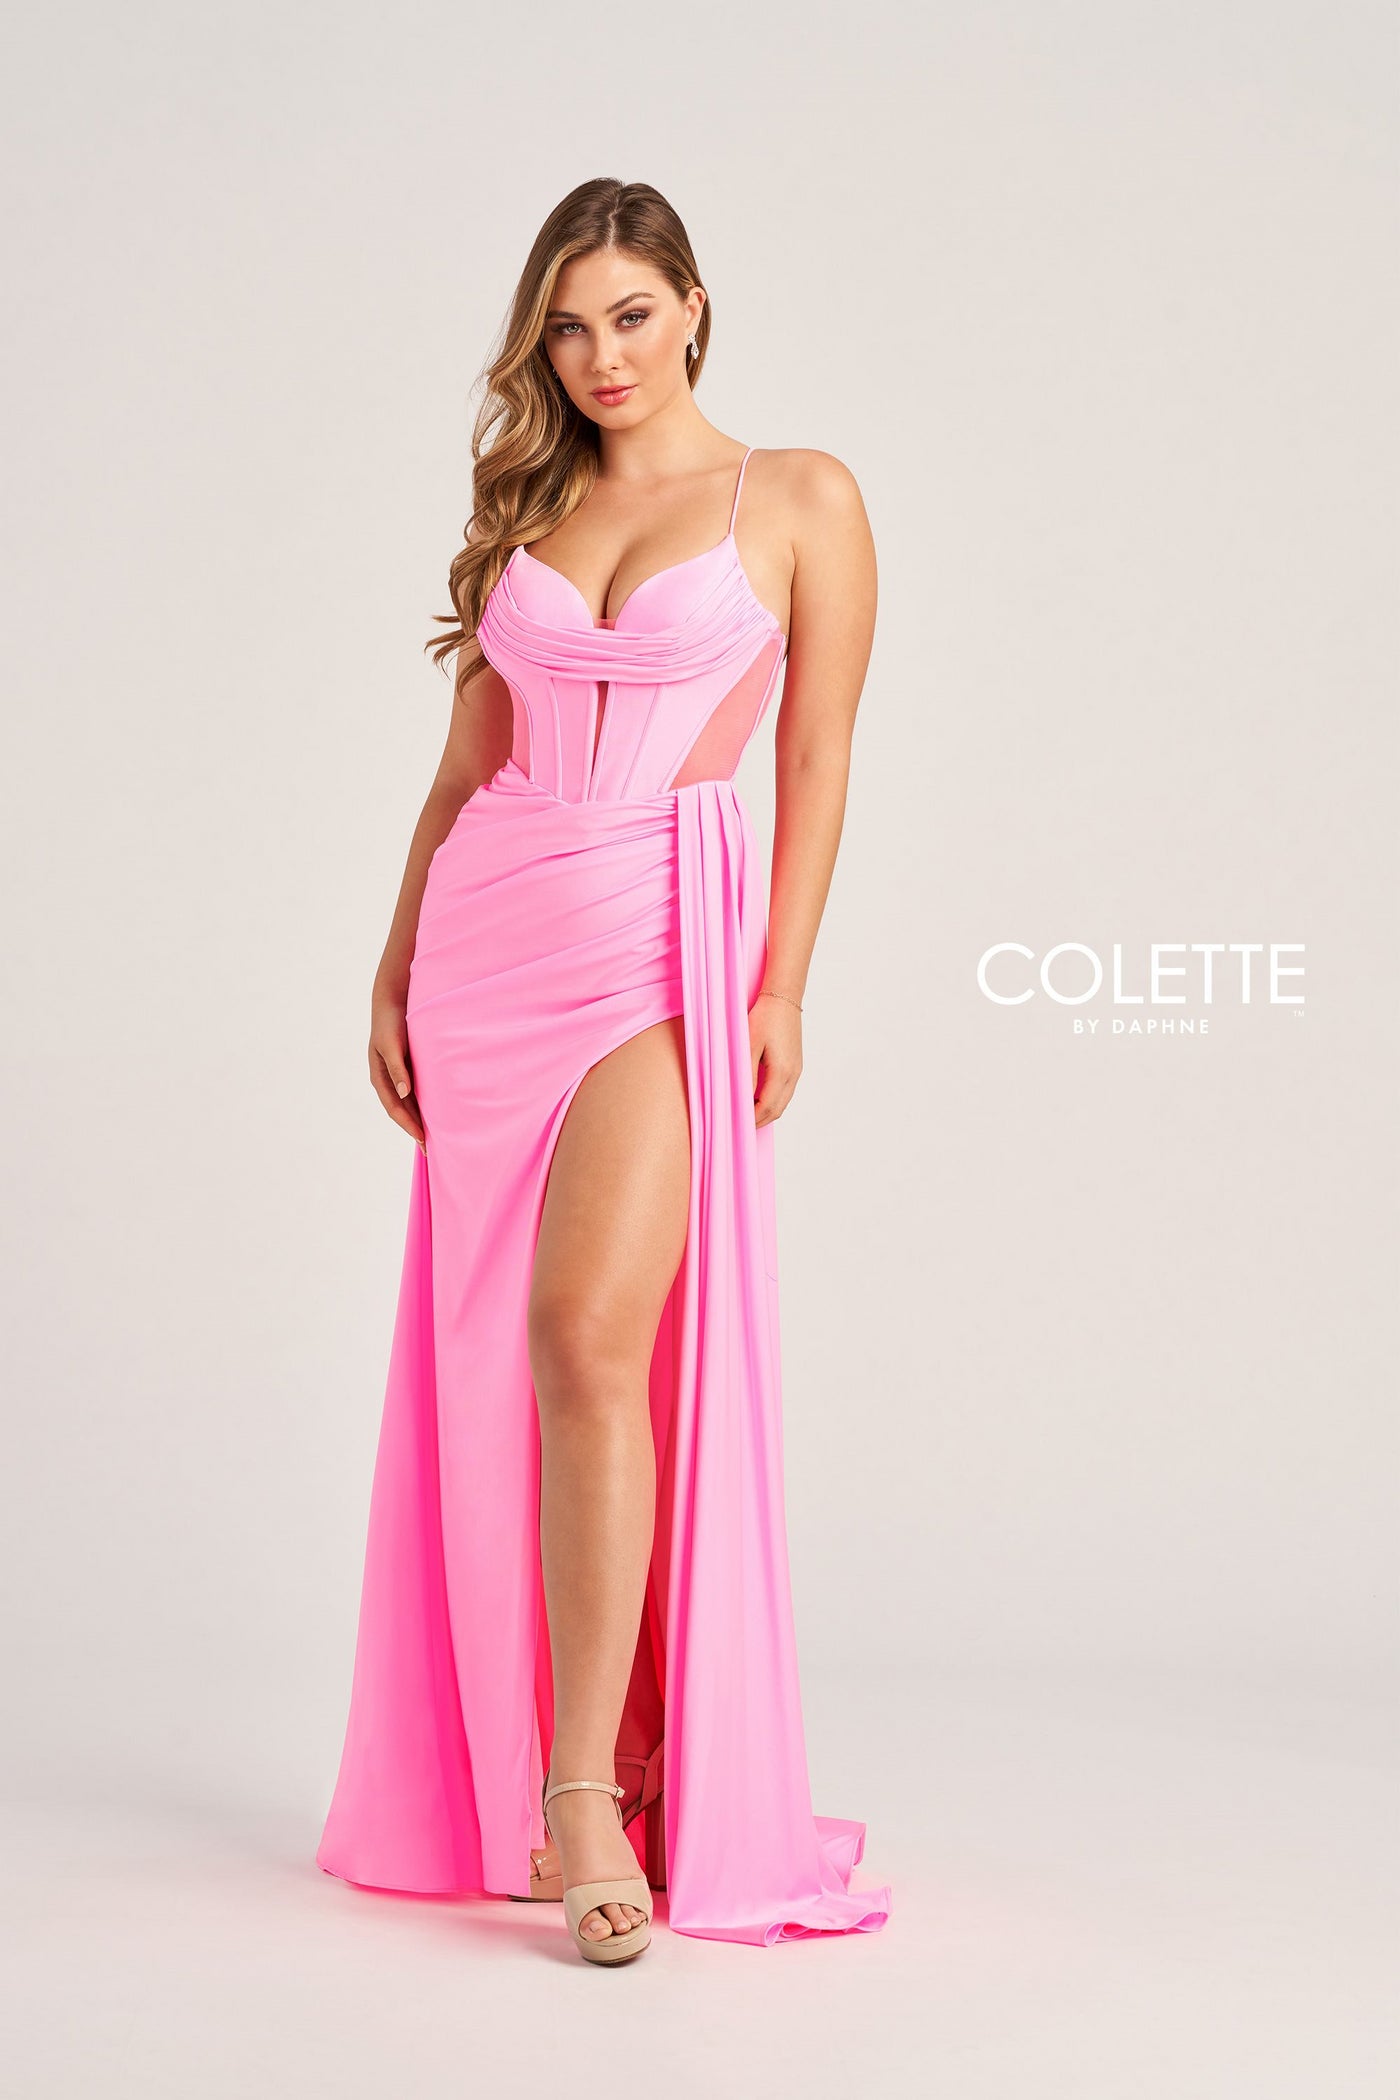 Colette CL5159